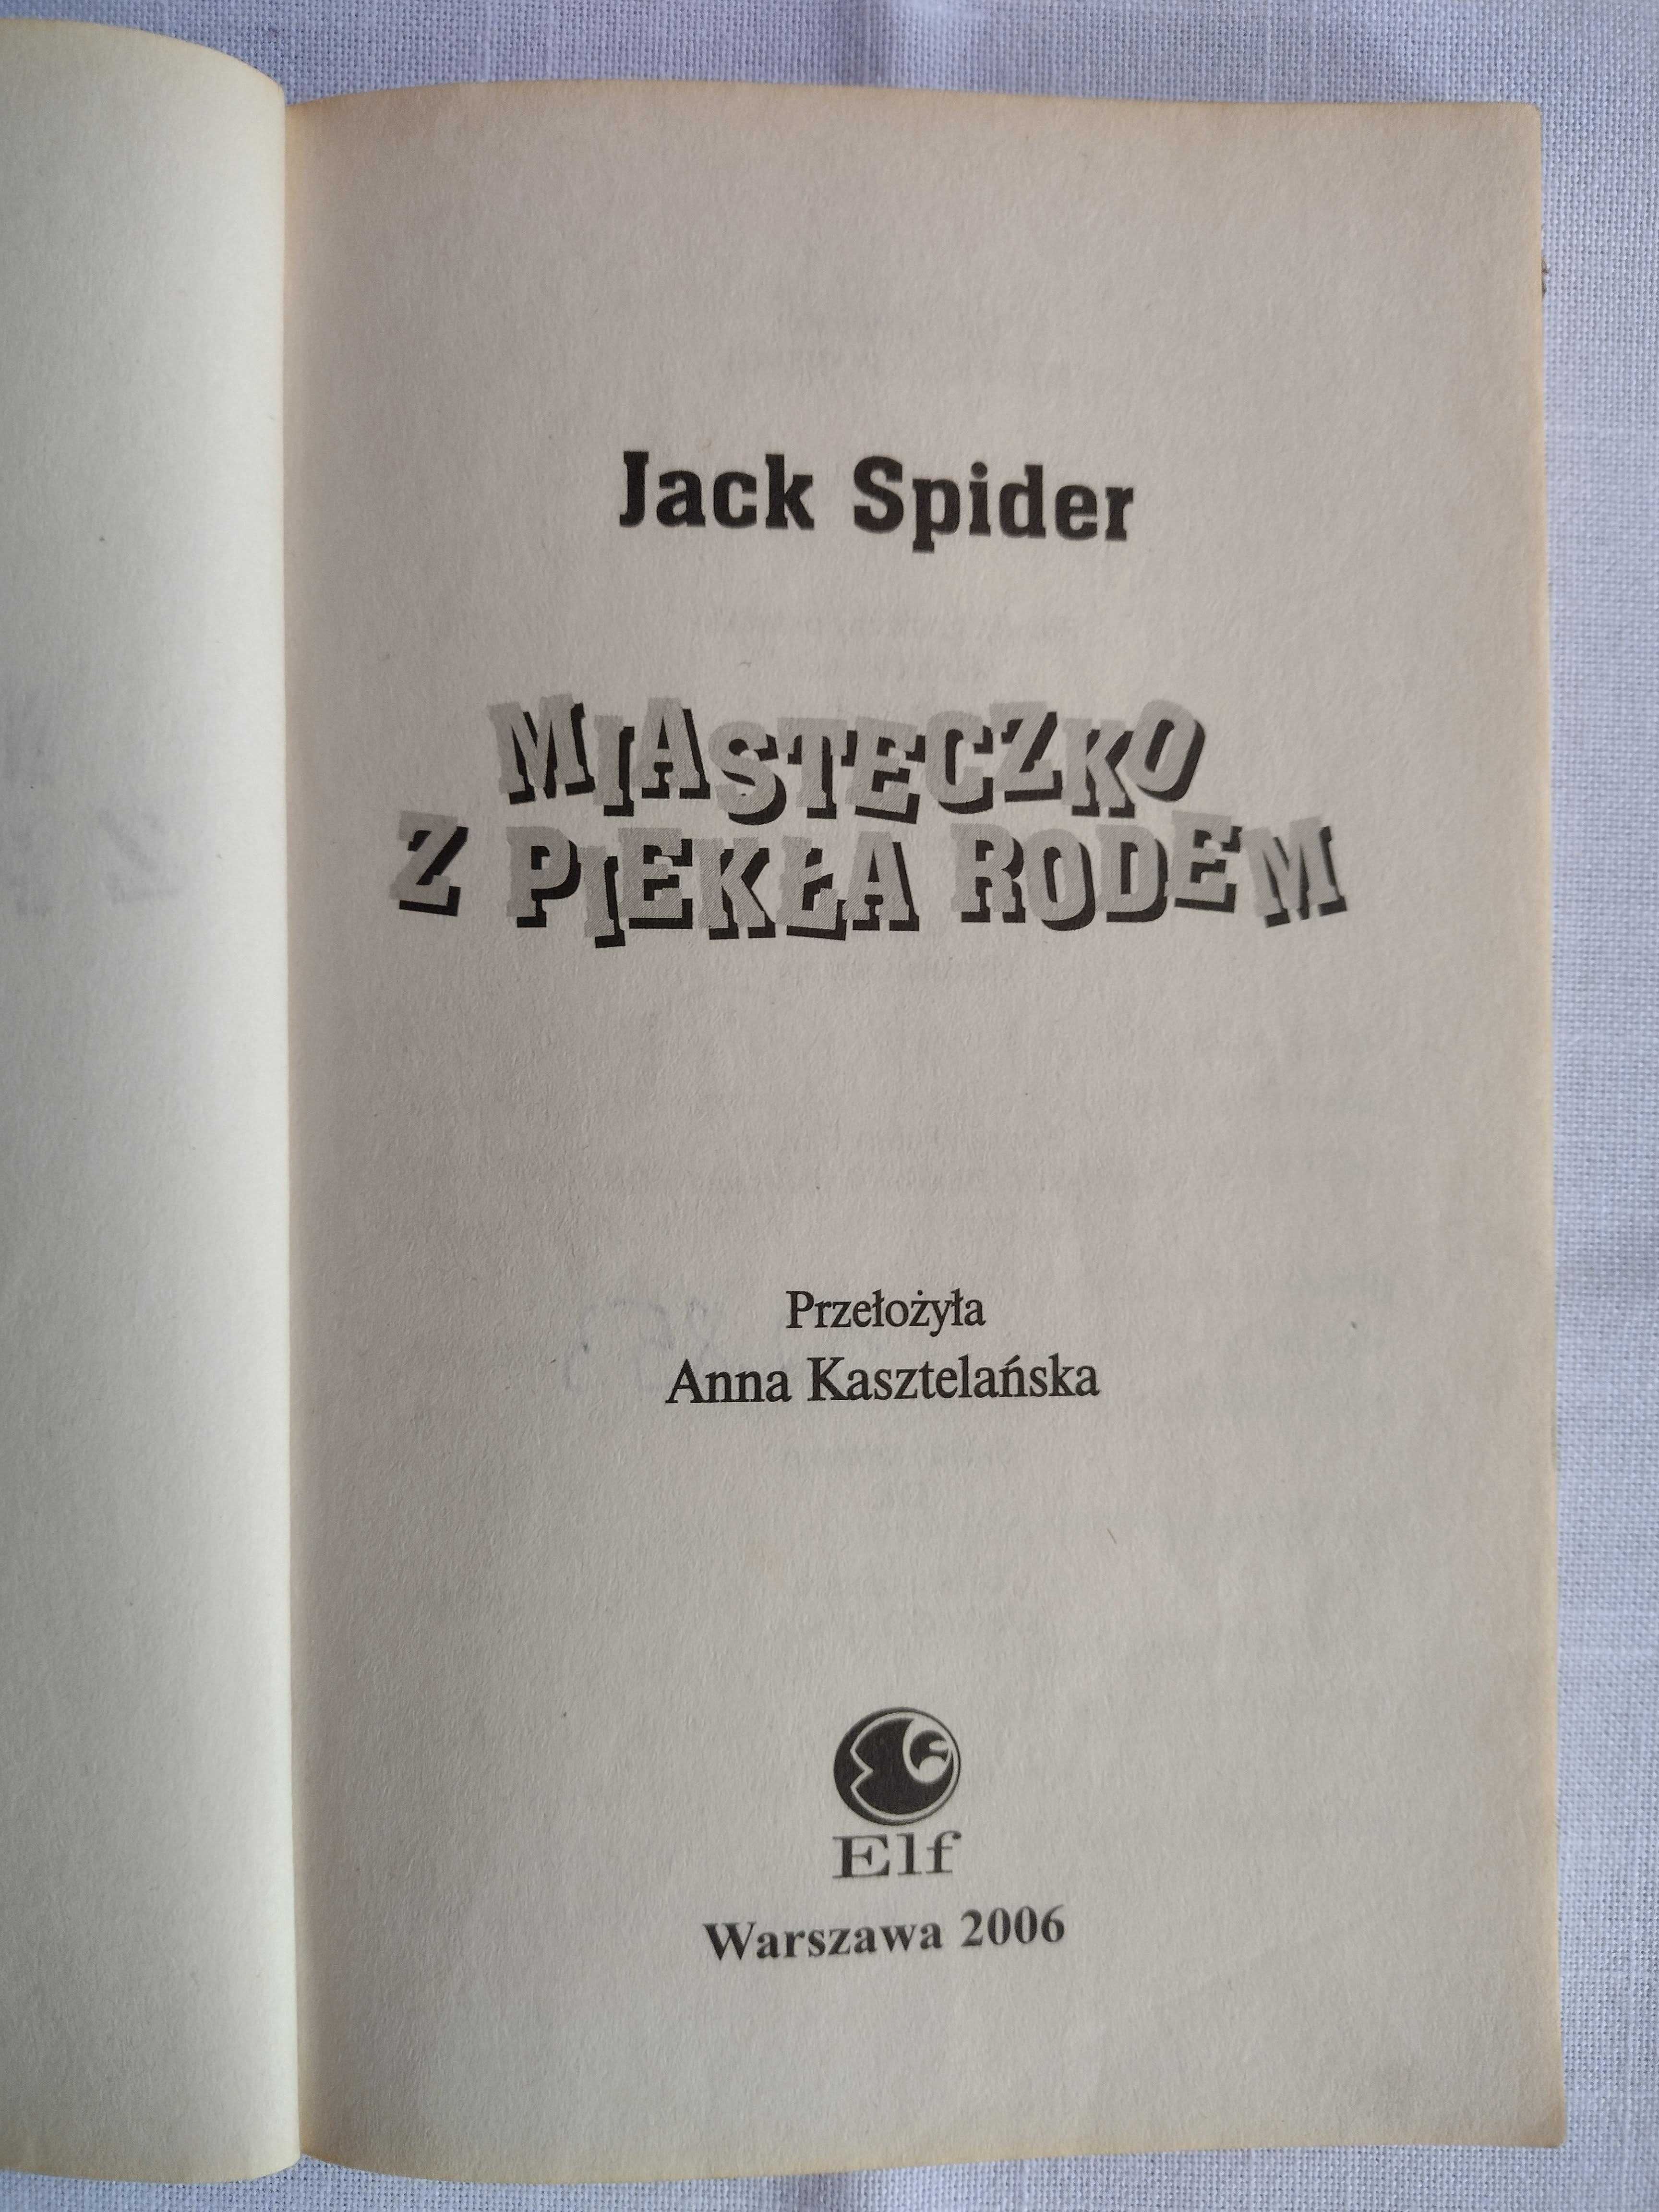 Jack Spider - Miasteczko z piekła rodem: Żabia zupa